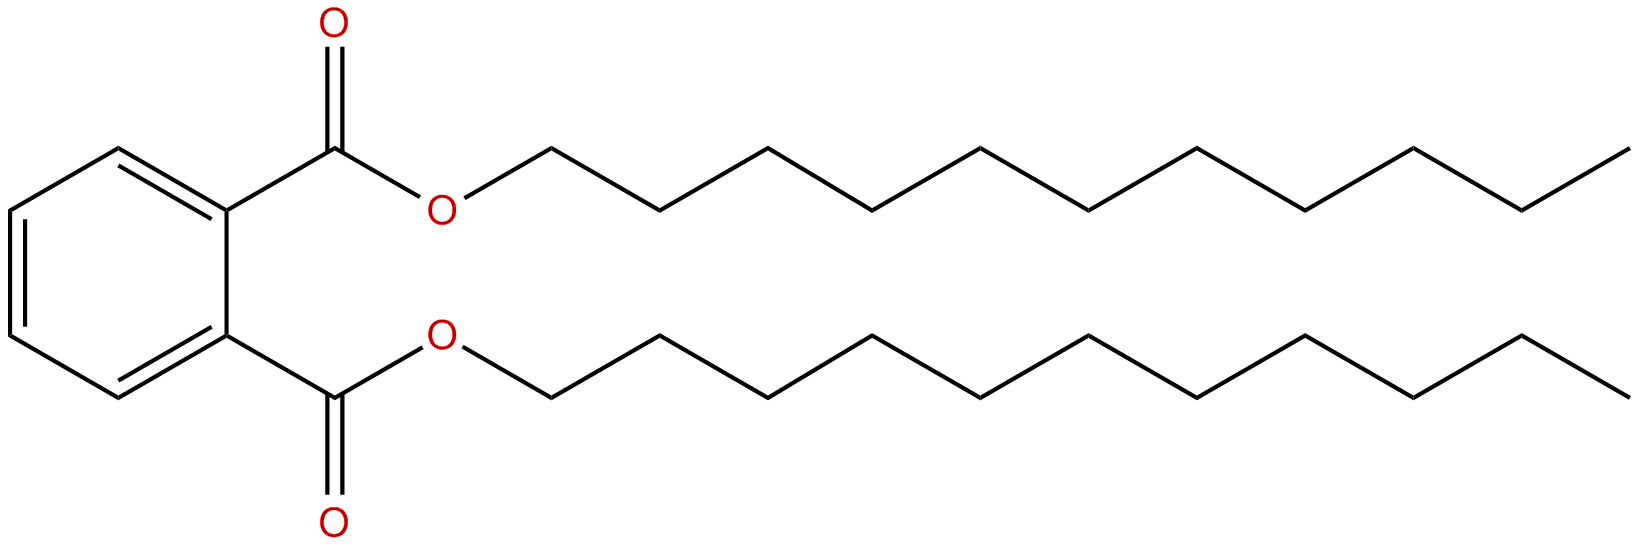 Image of 1,2-benzenedicarboxylic acid, diundecyl ester